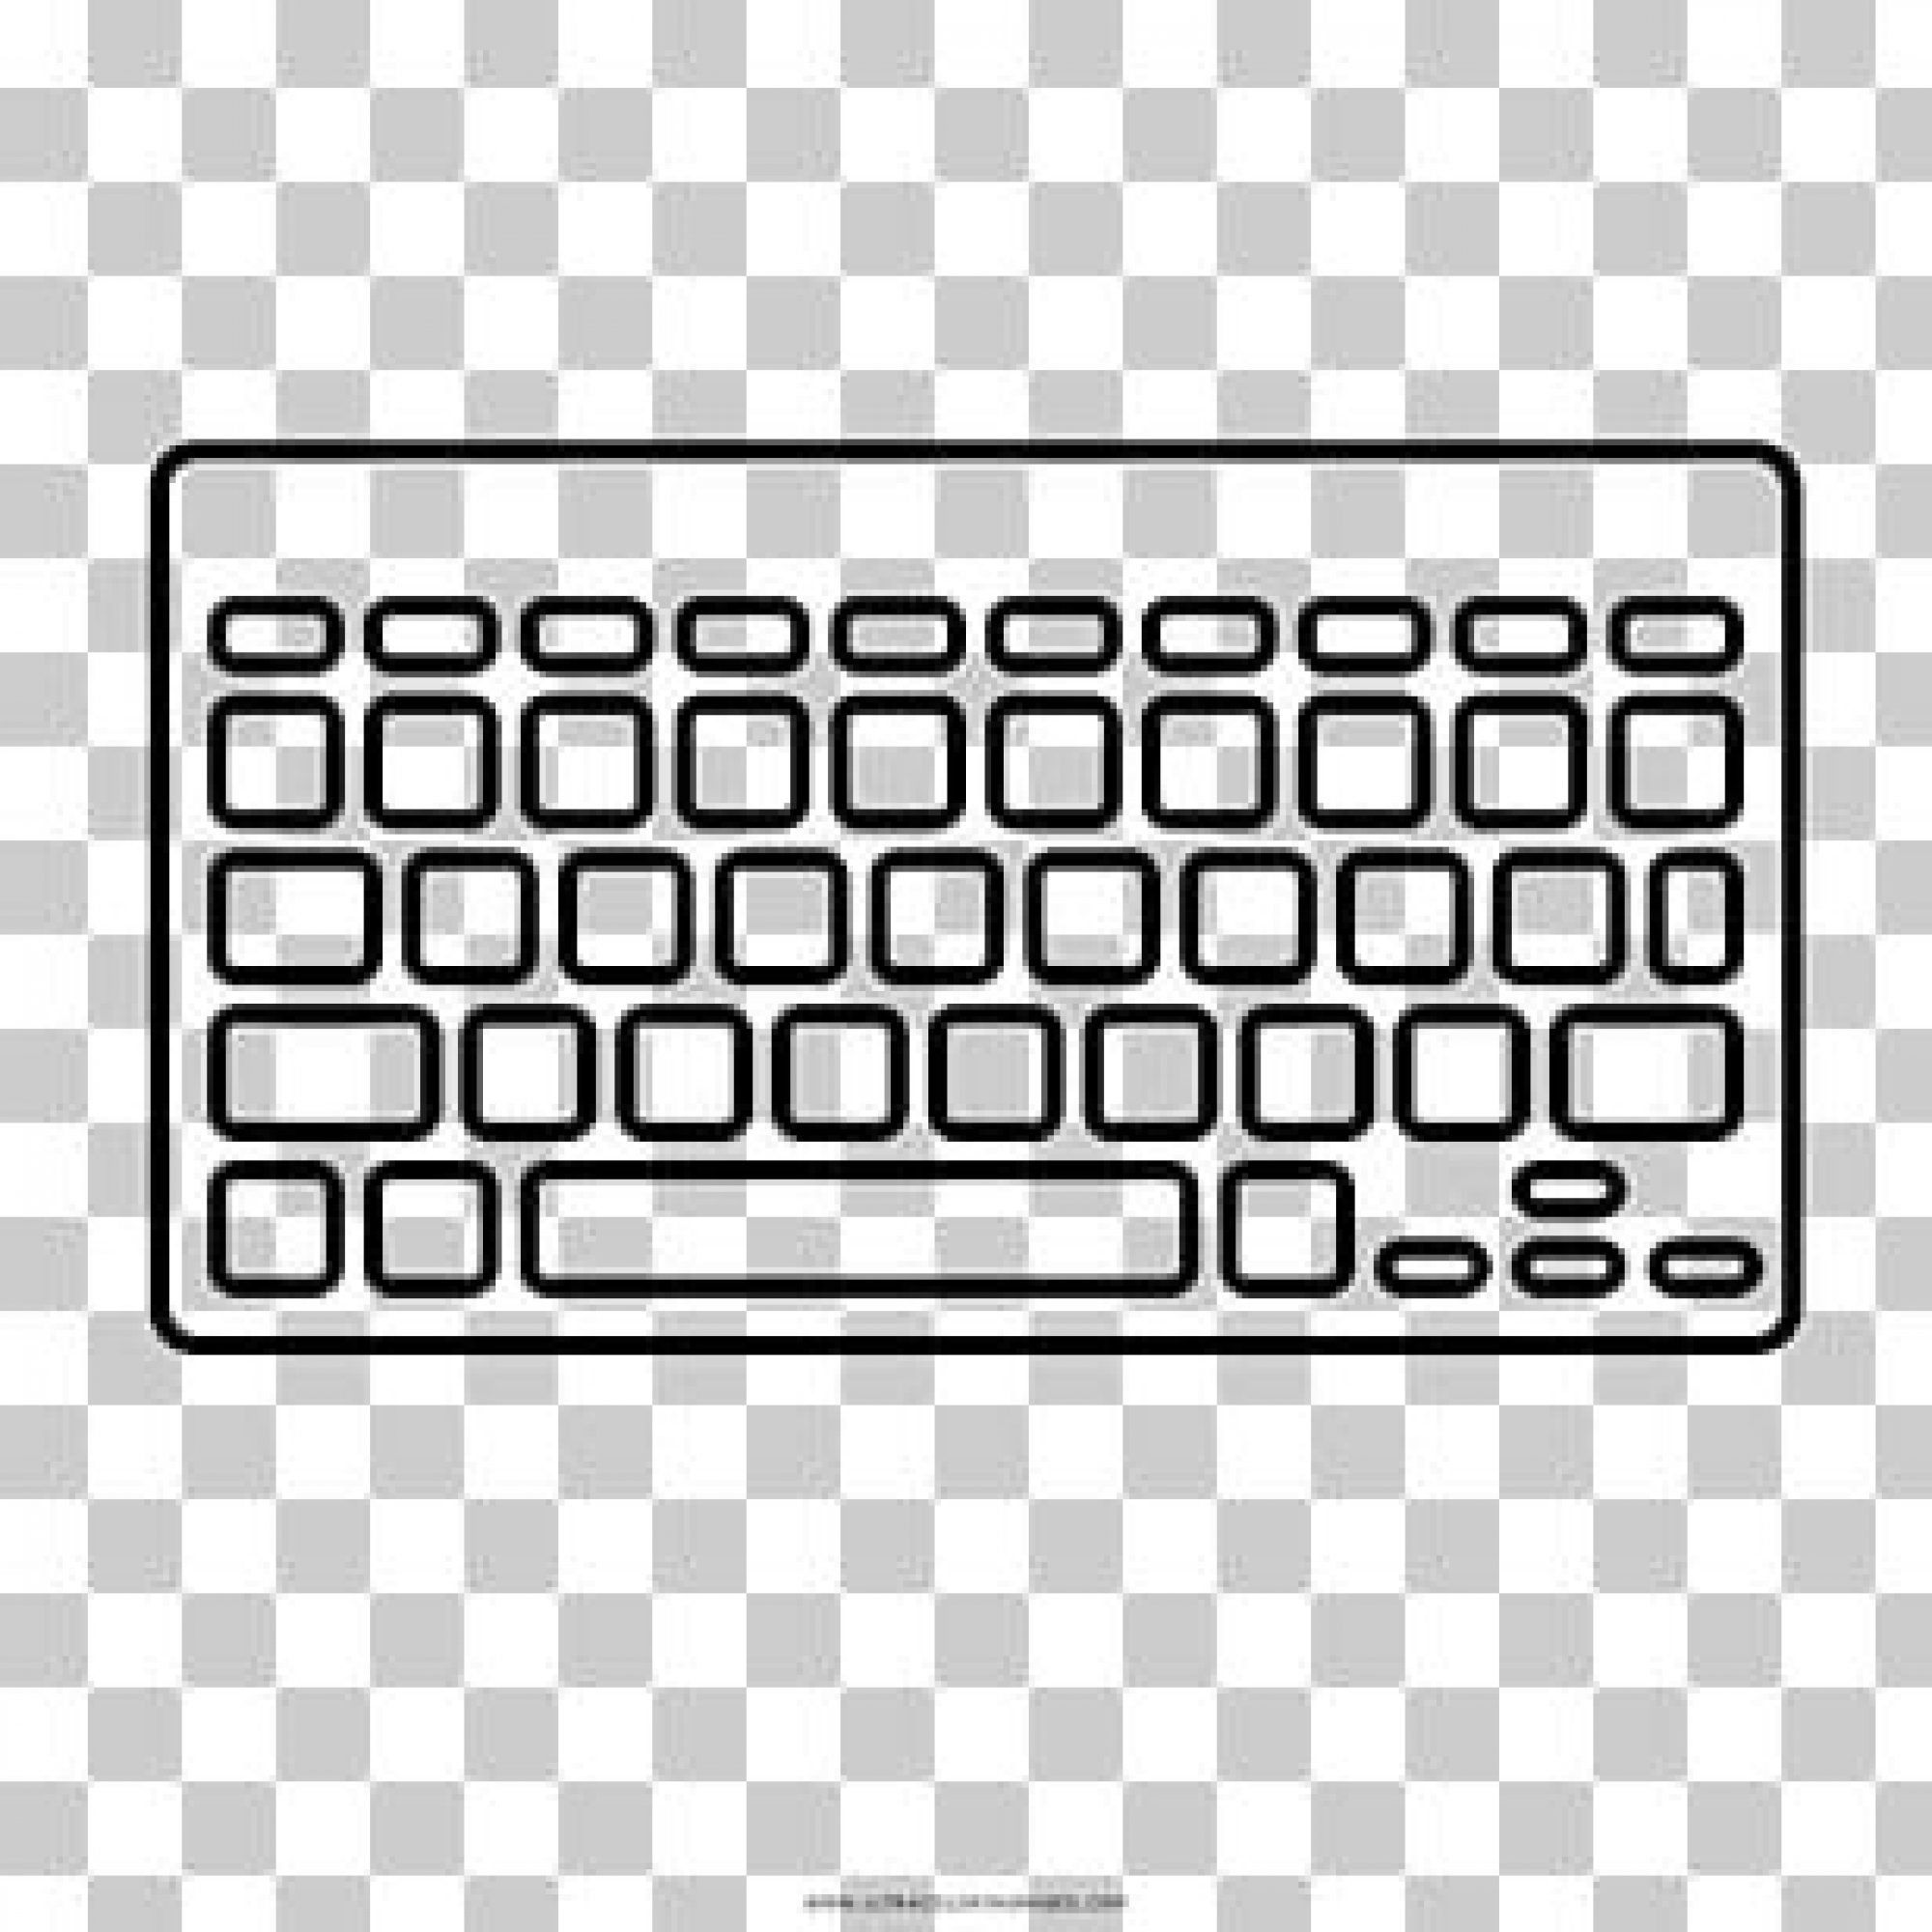 Макет клавиатуры